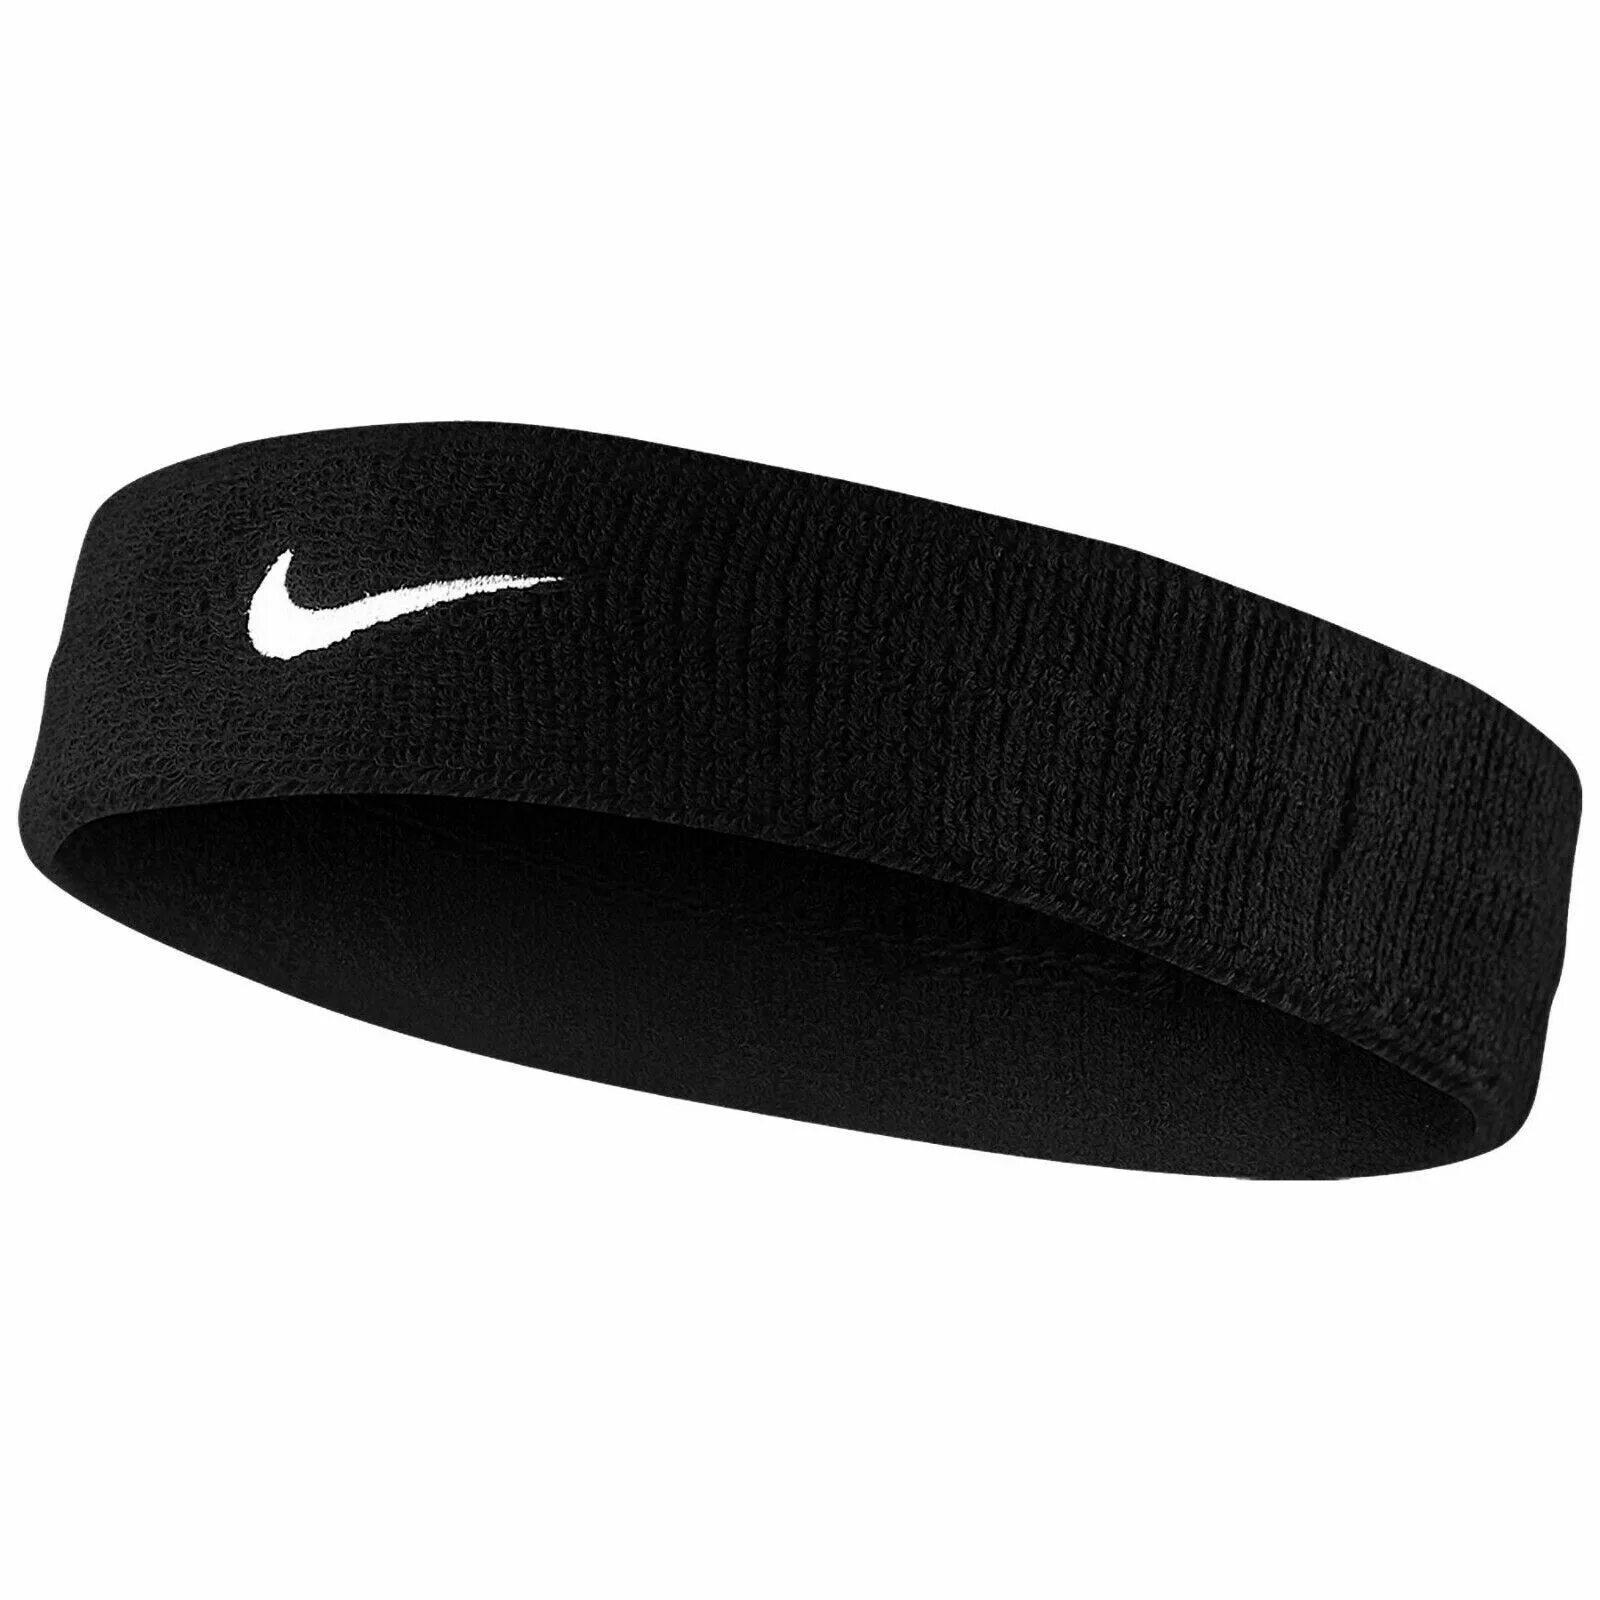 Найк на голову. Nike Swoosh Headband. Повязка Nike Swoosh Headband. Nike Swoosh Headband White. Nike Swoosh Headband Black.